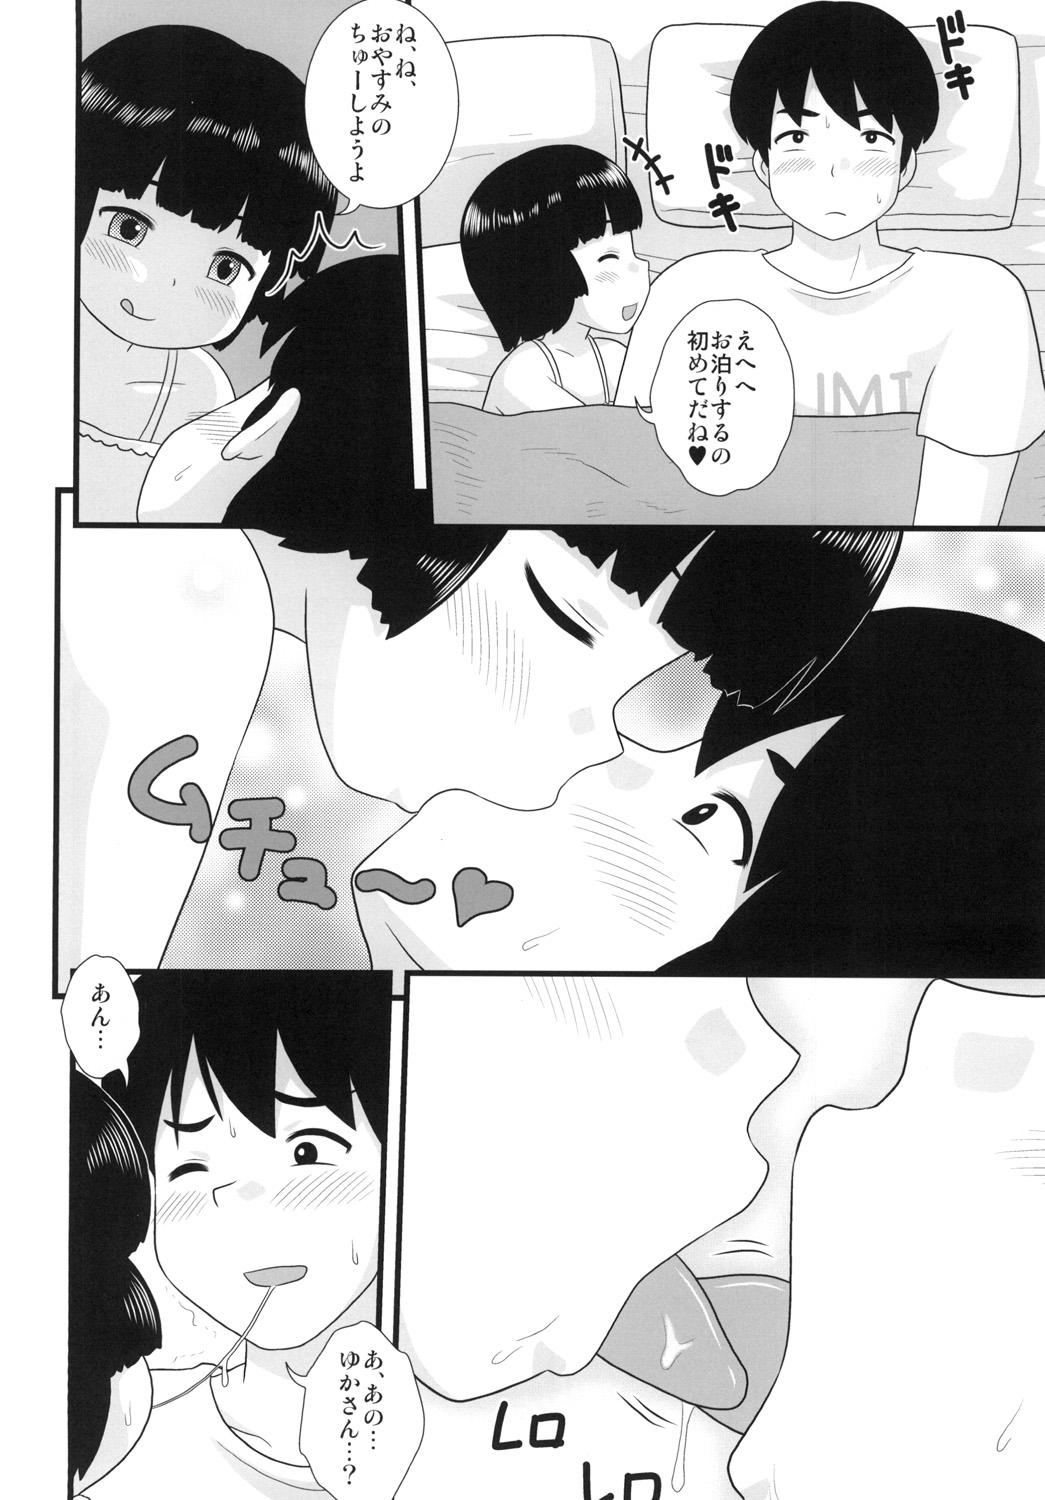 Ruiva Tonari no Heya no Shougakusei 2 Girlfriend - Page 4